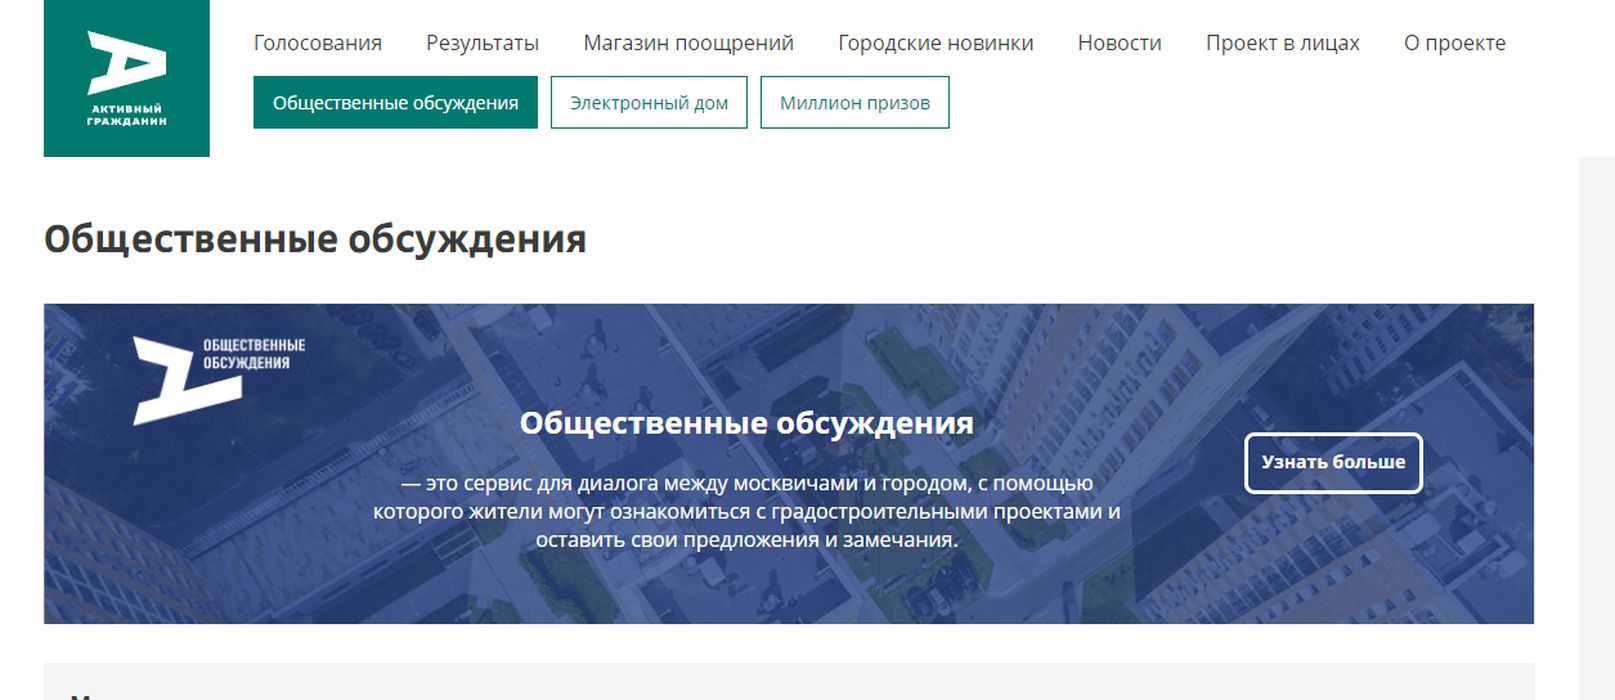 Москвичи обсудят проект планировки района по реновации в Южном Тушине